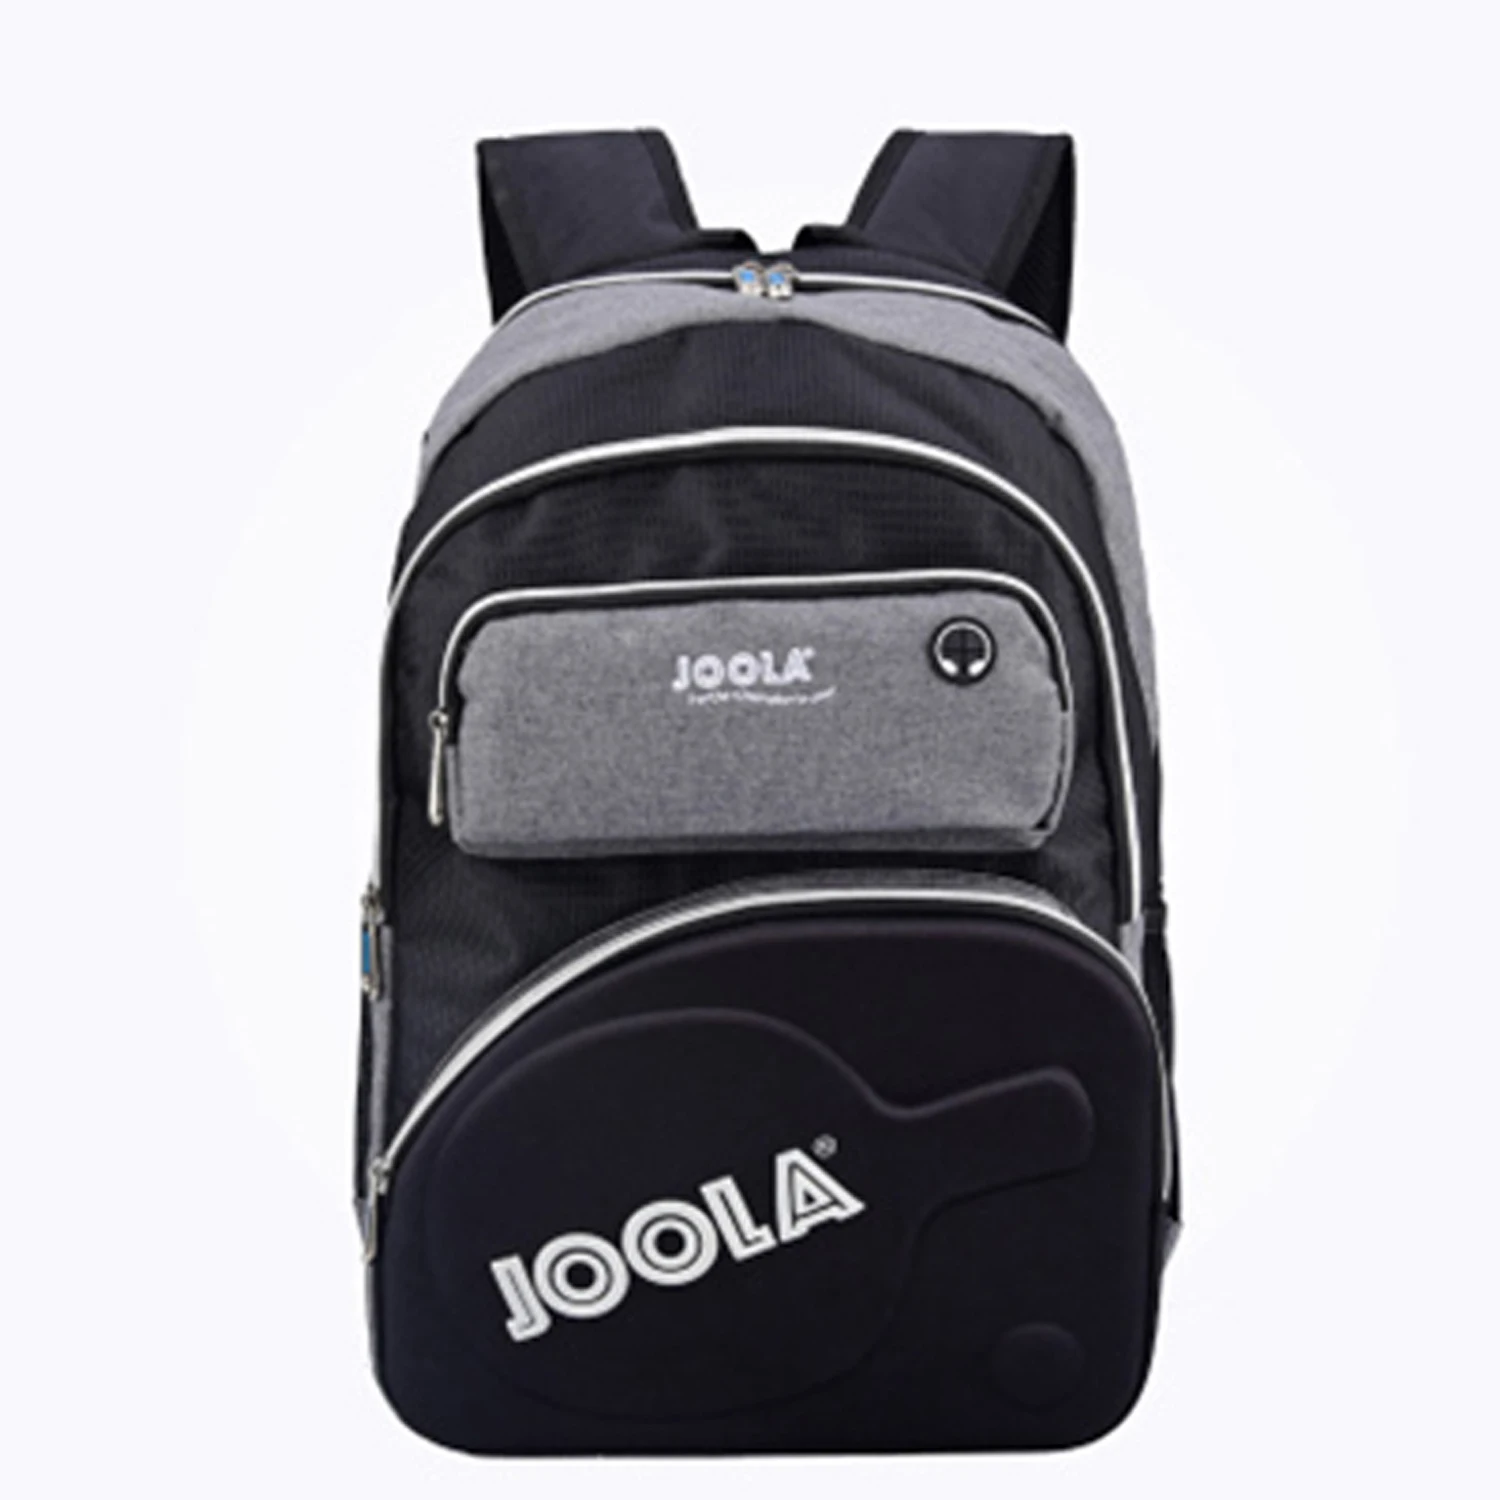 joola-искусственная-сумка-для-обуви-из-ПВХ-для-настольного-тенниса-пинг-понга